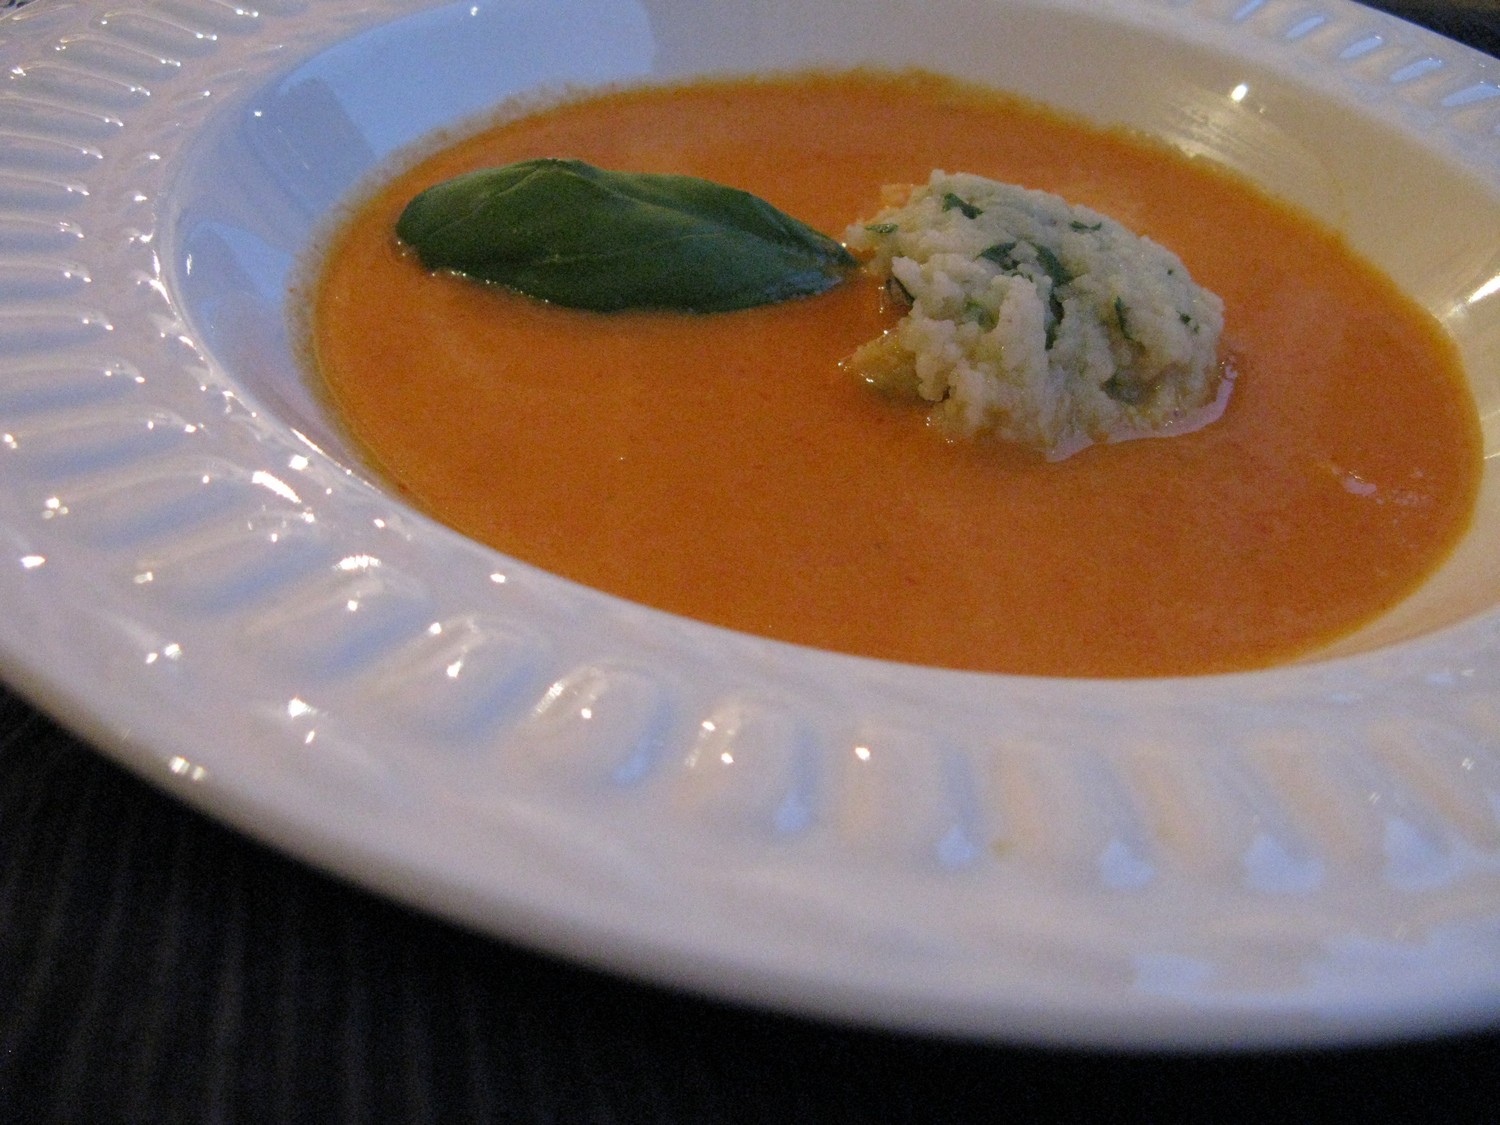 Pikante Tomaten Paprika Suppe Mit Einlage — Rezepte Suchen